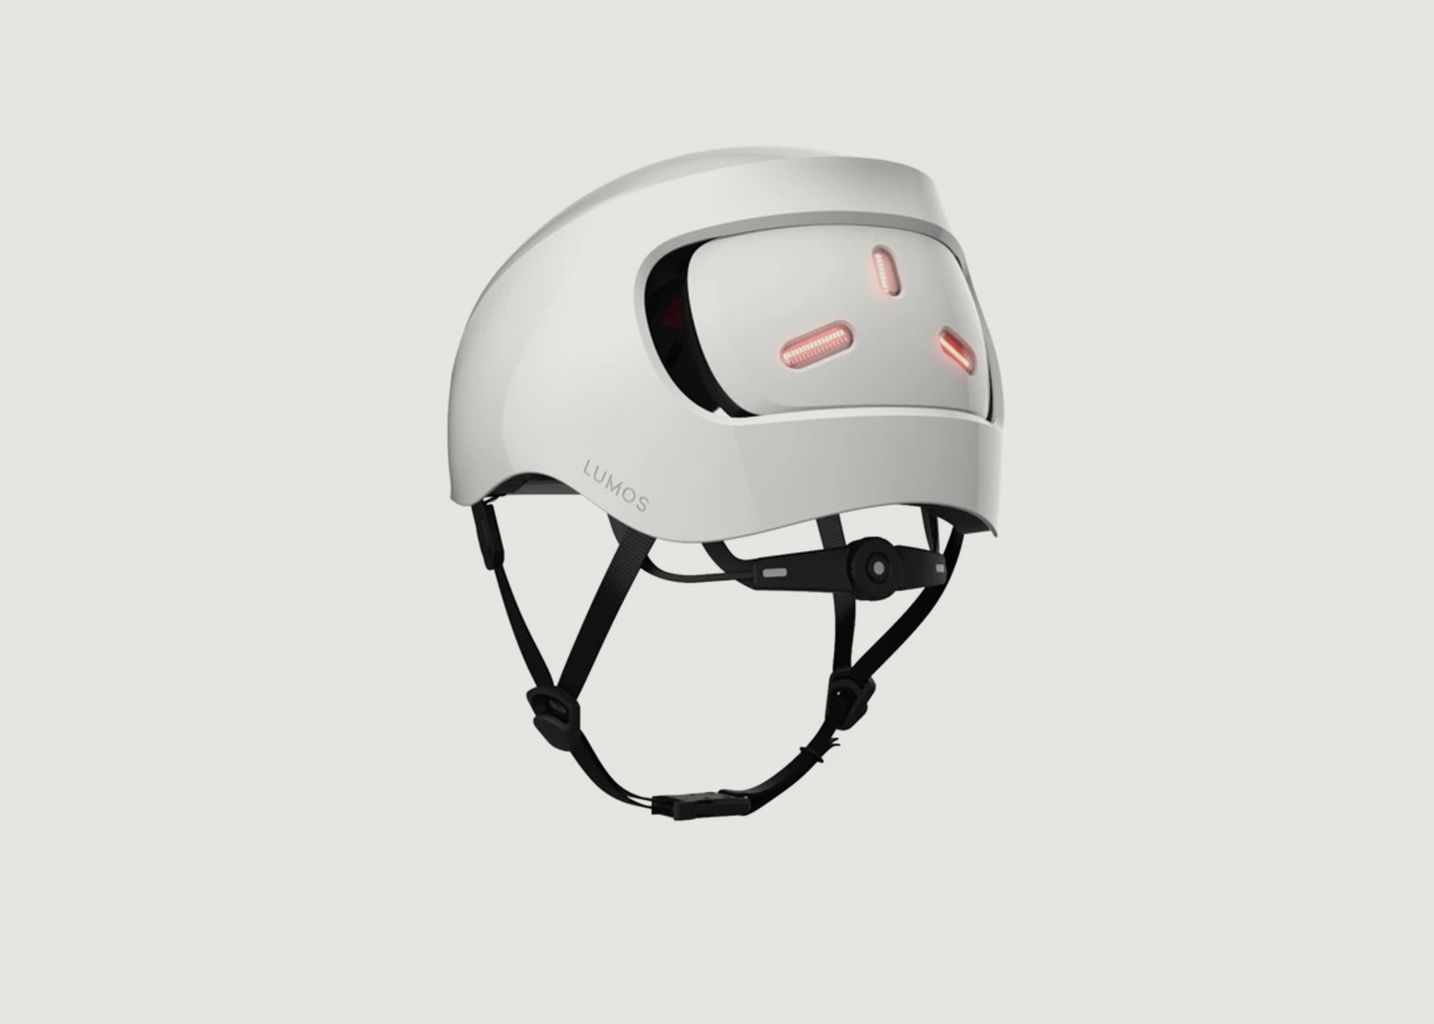 Lumos Street Helmet - Lumos Helmet